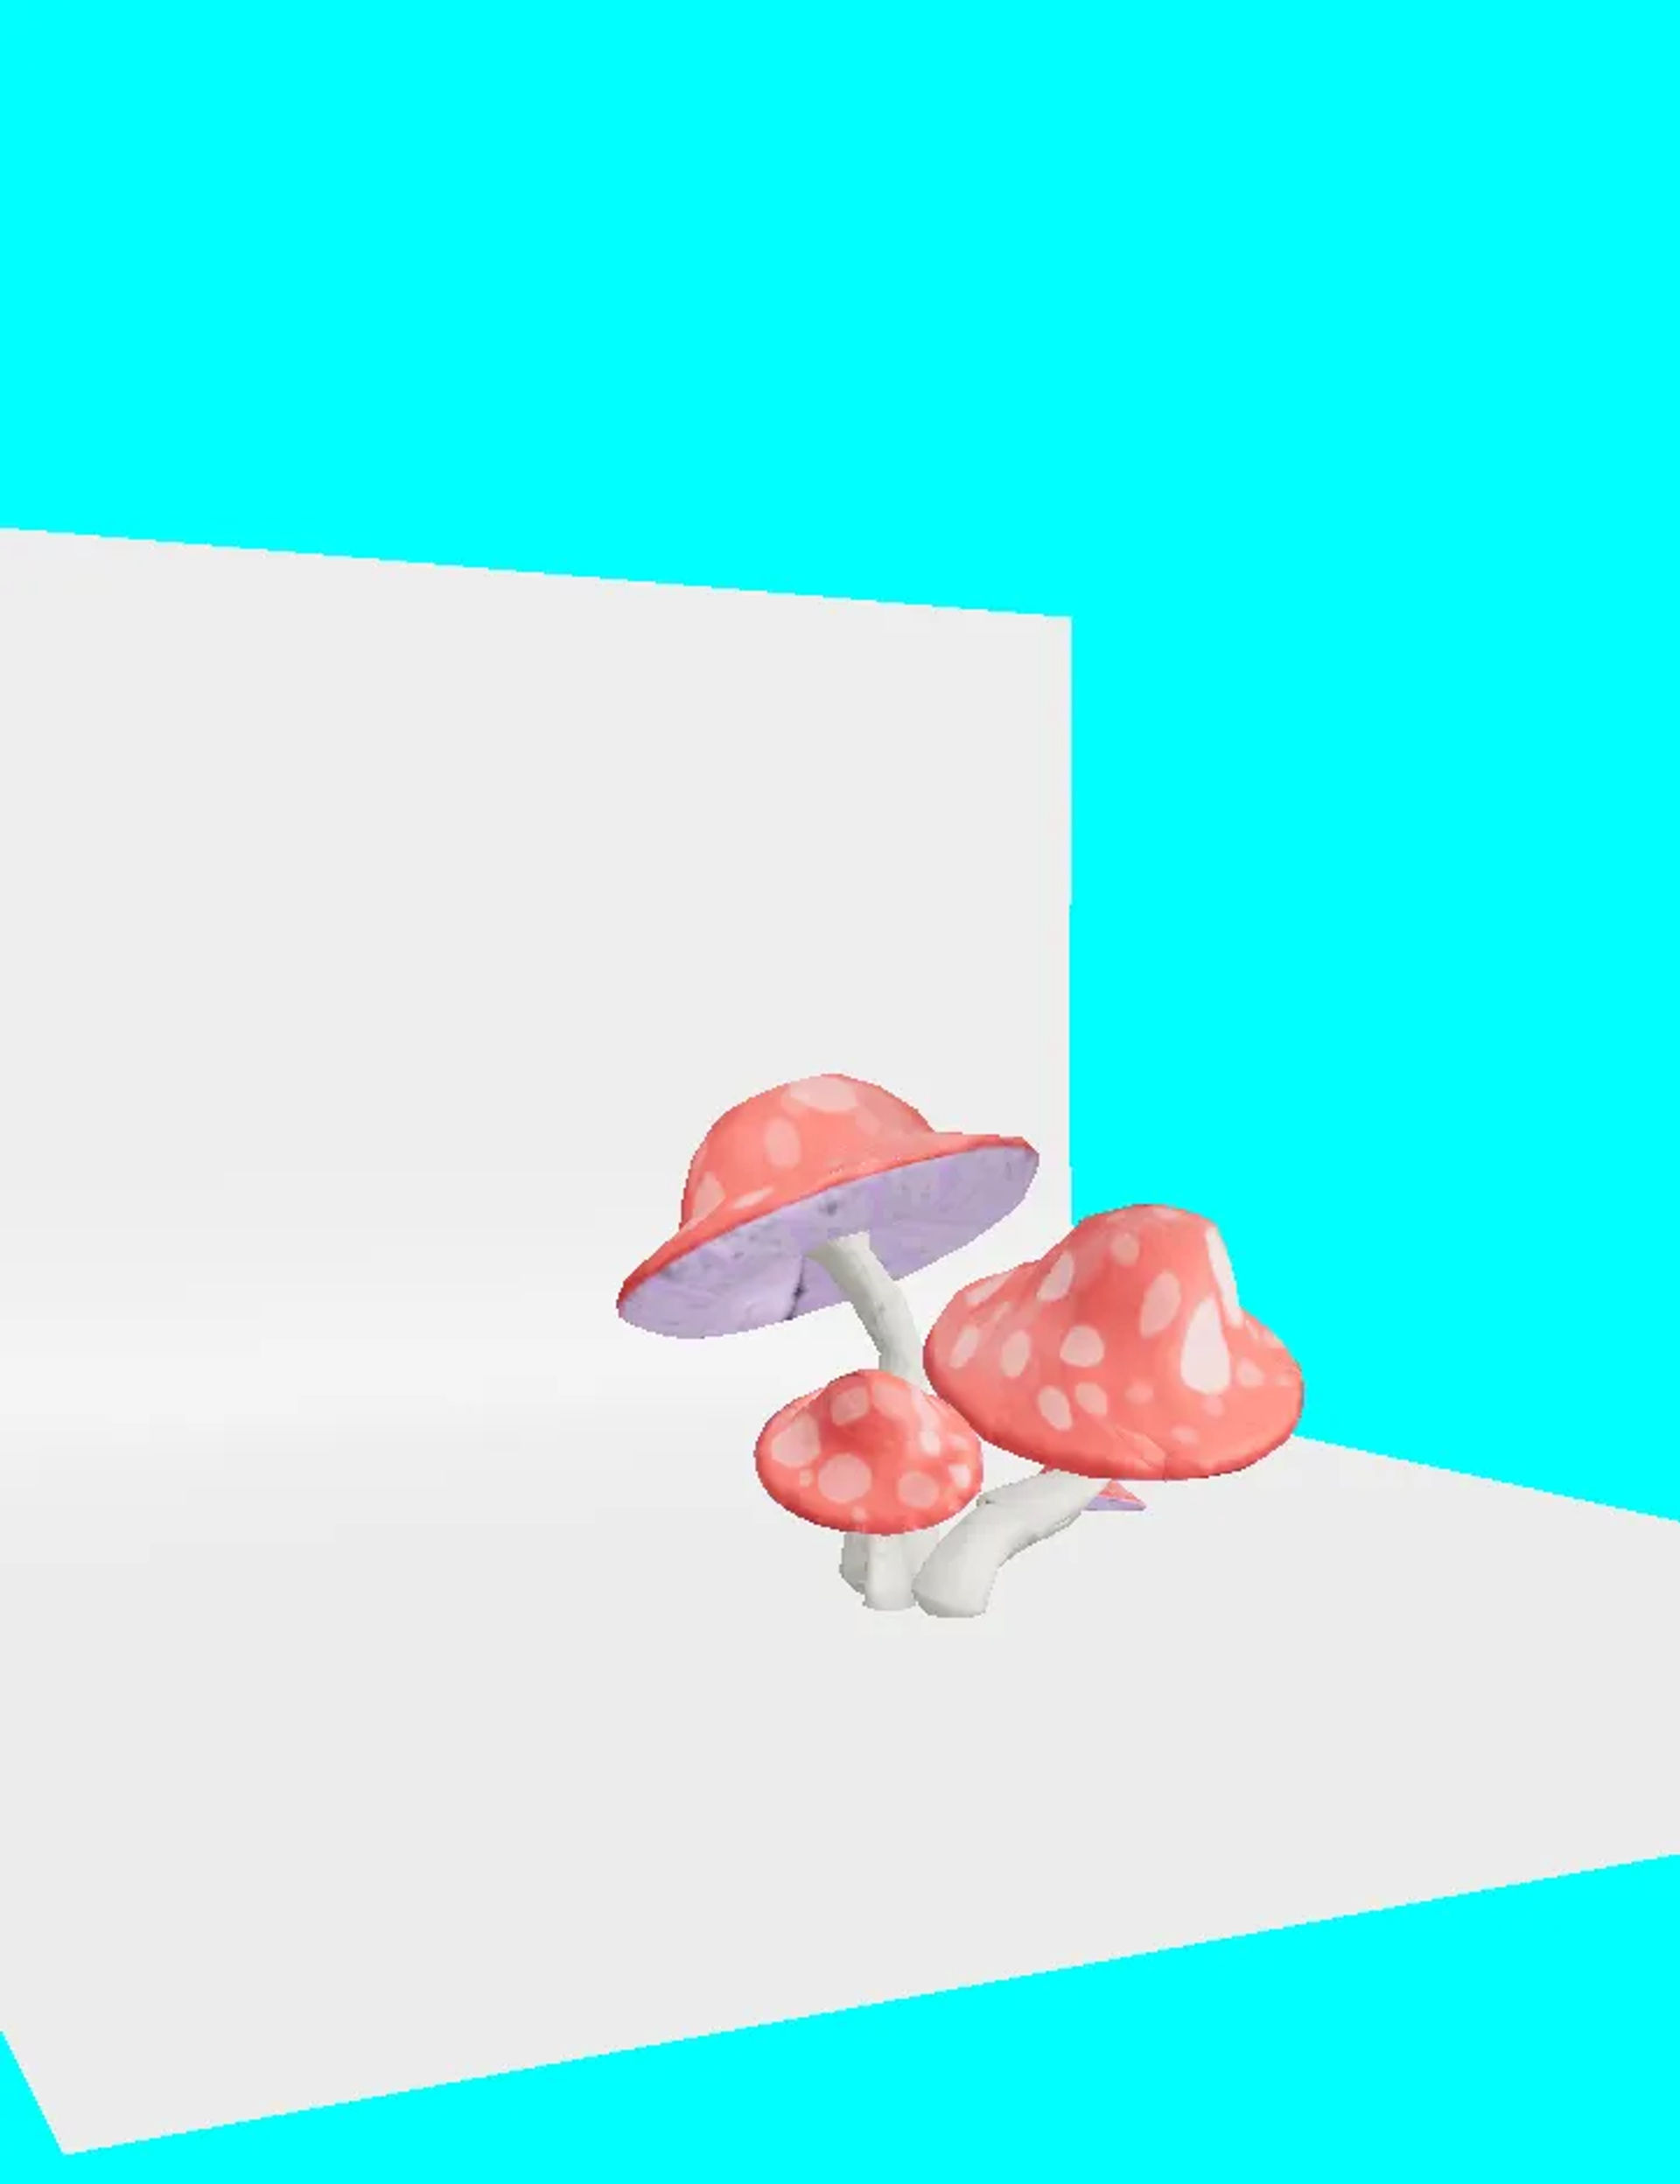 cartoon mushrooms